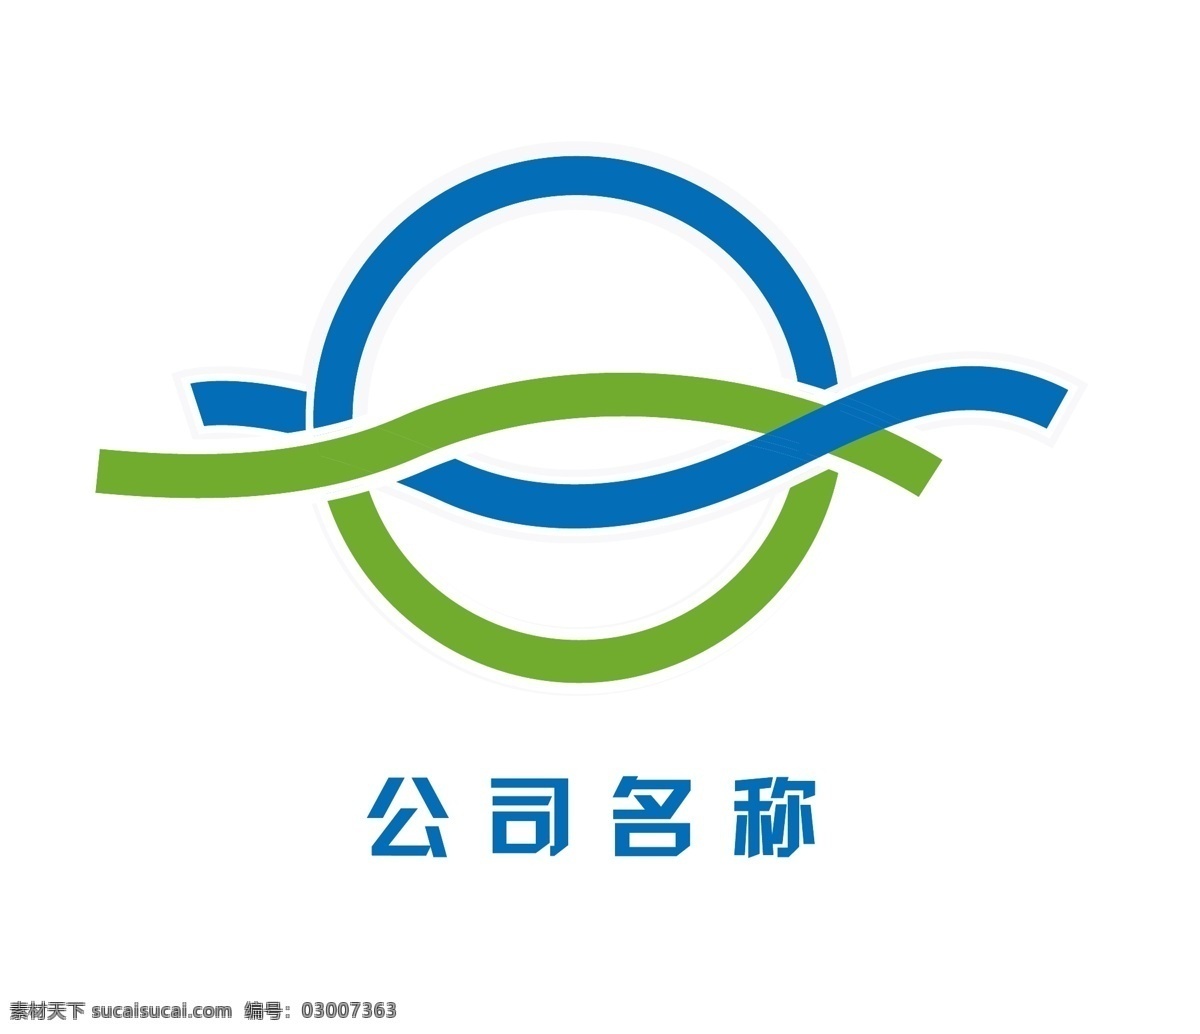 互联网 科技 logo 科技标志 环保logo 线形logo 绿色 发展 图形标志 简约标志 标志图标 企业 标志